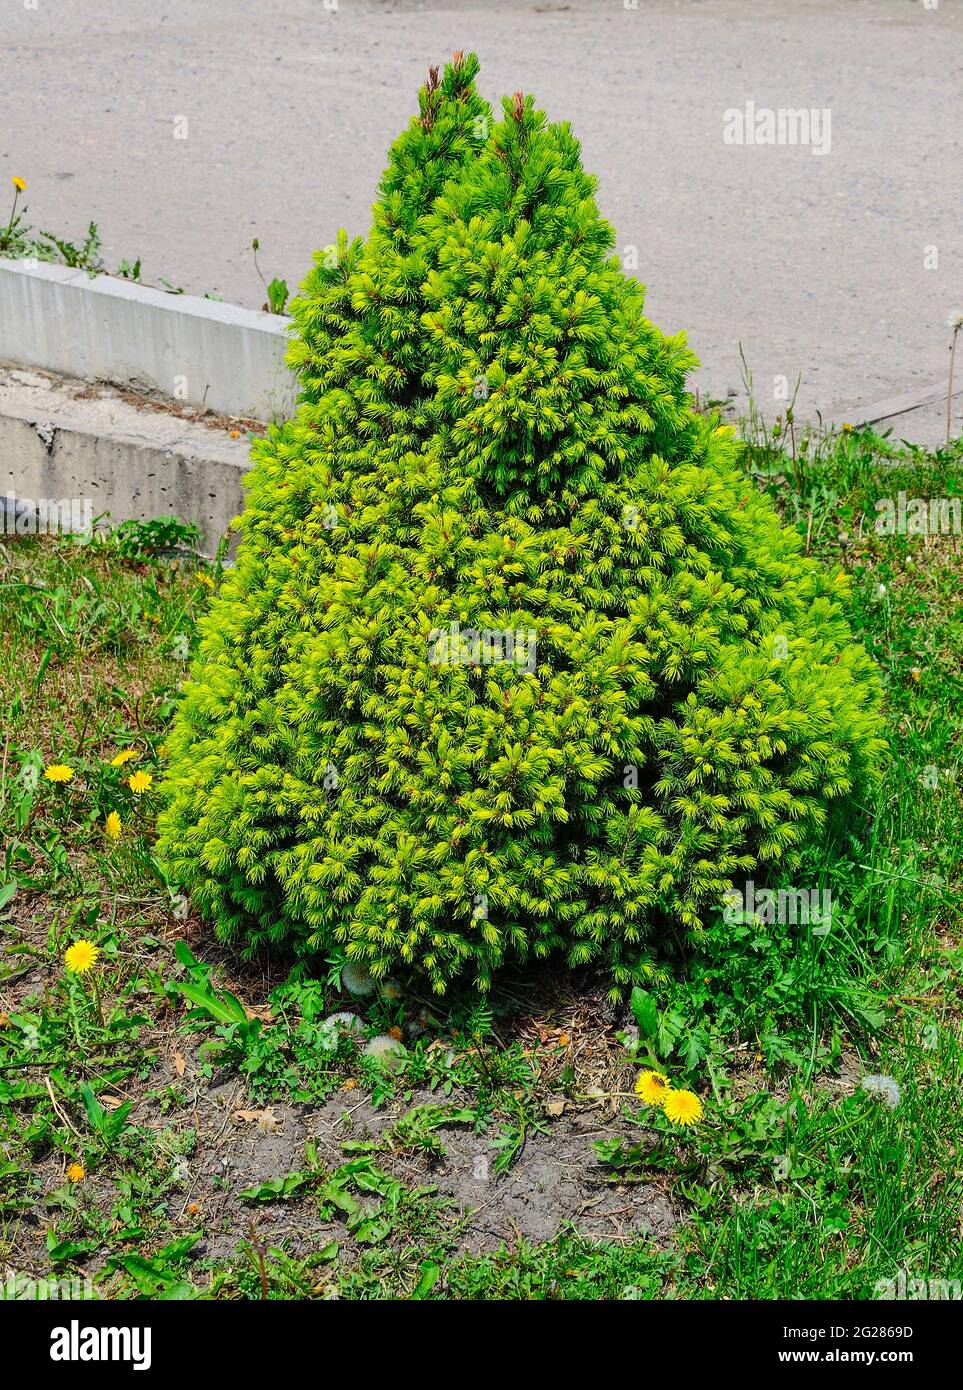 Croissance printanière de l'épinette canadienne naine CONICA (Picea glauca), plante de conifères pérenne Evergreen utilisée comme décoration dans la conception du paysage du parc ou g Banque D'Images